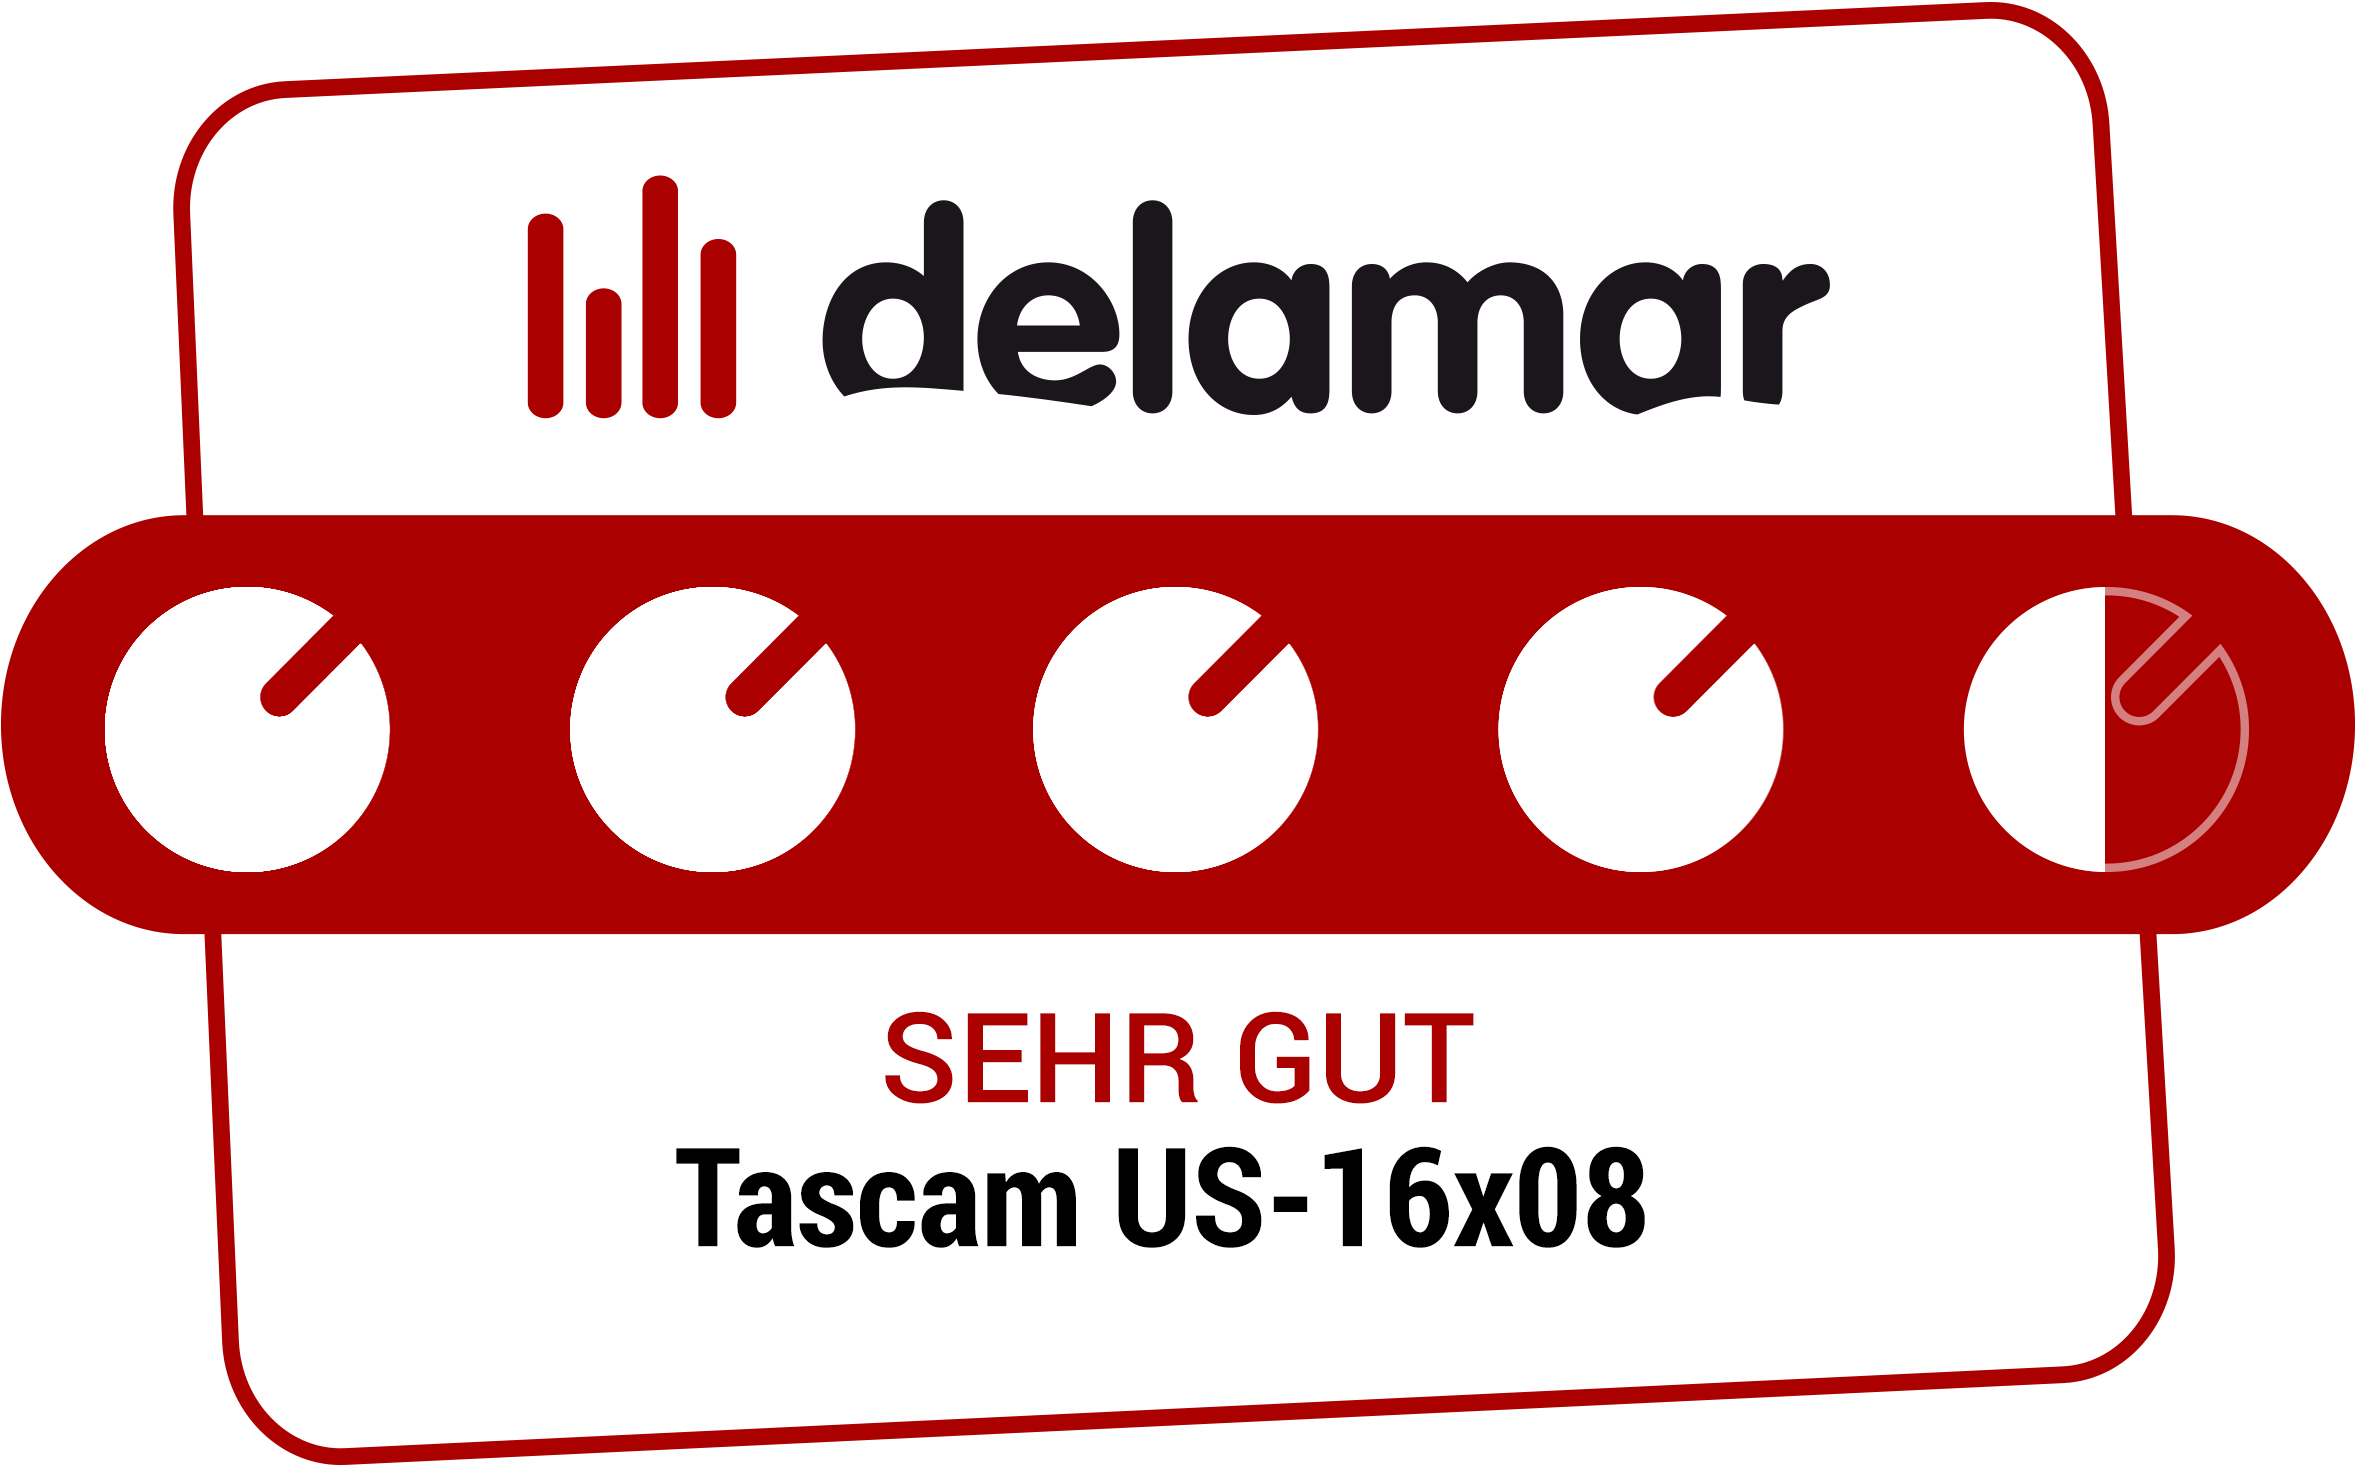 Delamar Testsiegel 'Sehr gut' für Tascam US-16x08